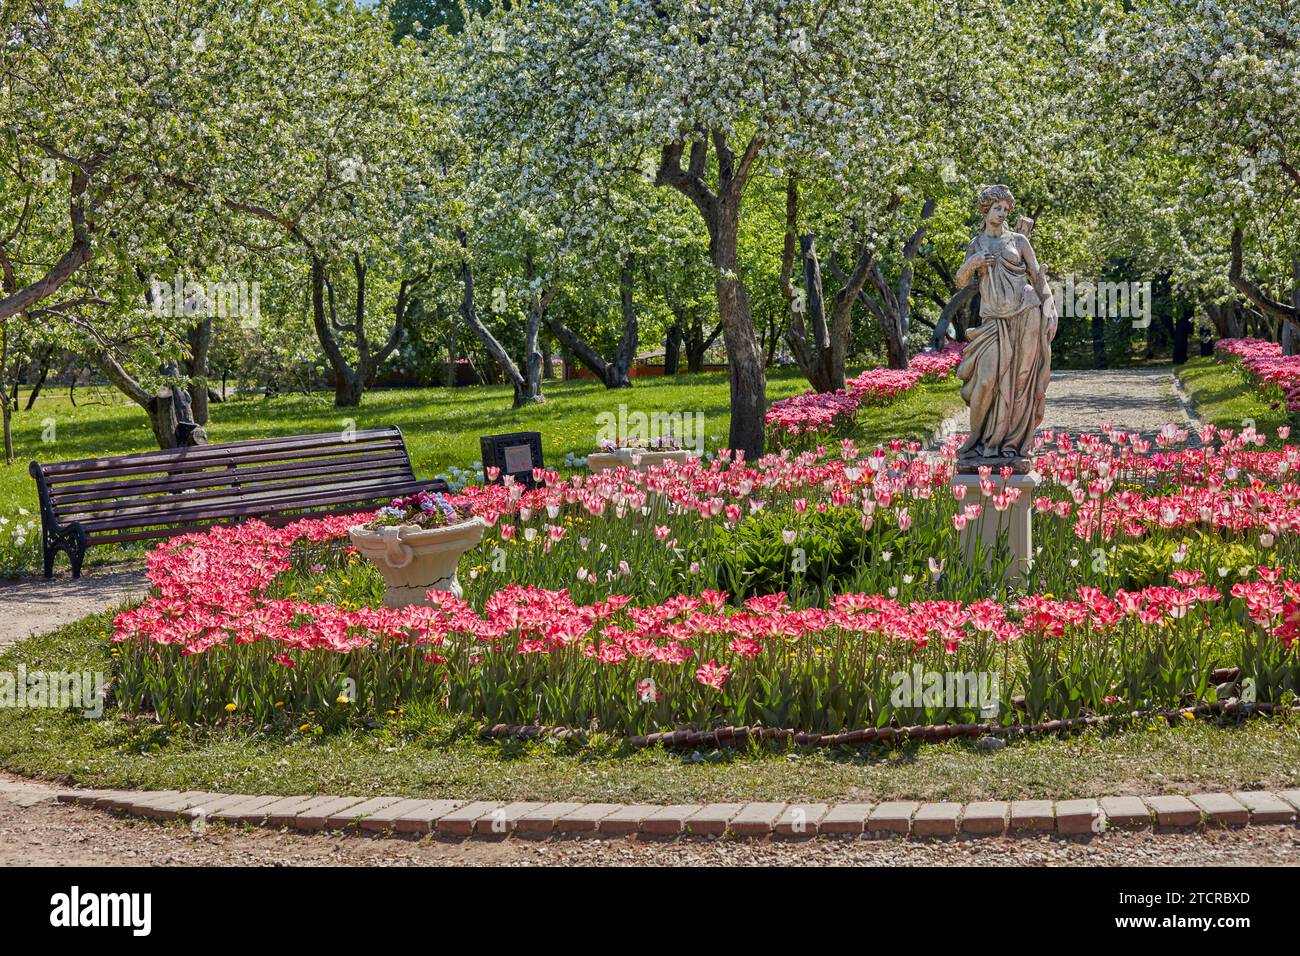 Parterre de fleurs avec tulipes roses en fleurs au milieu du verger de pommiers en fleurs dans le domaine Kolomenskoye. Moscou, Russie. Banque D'Images